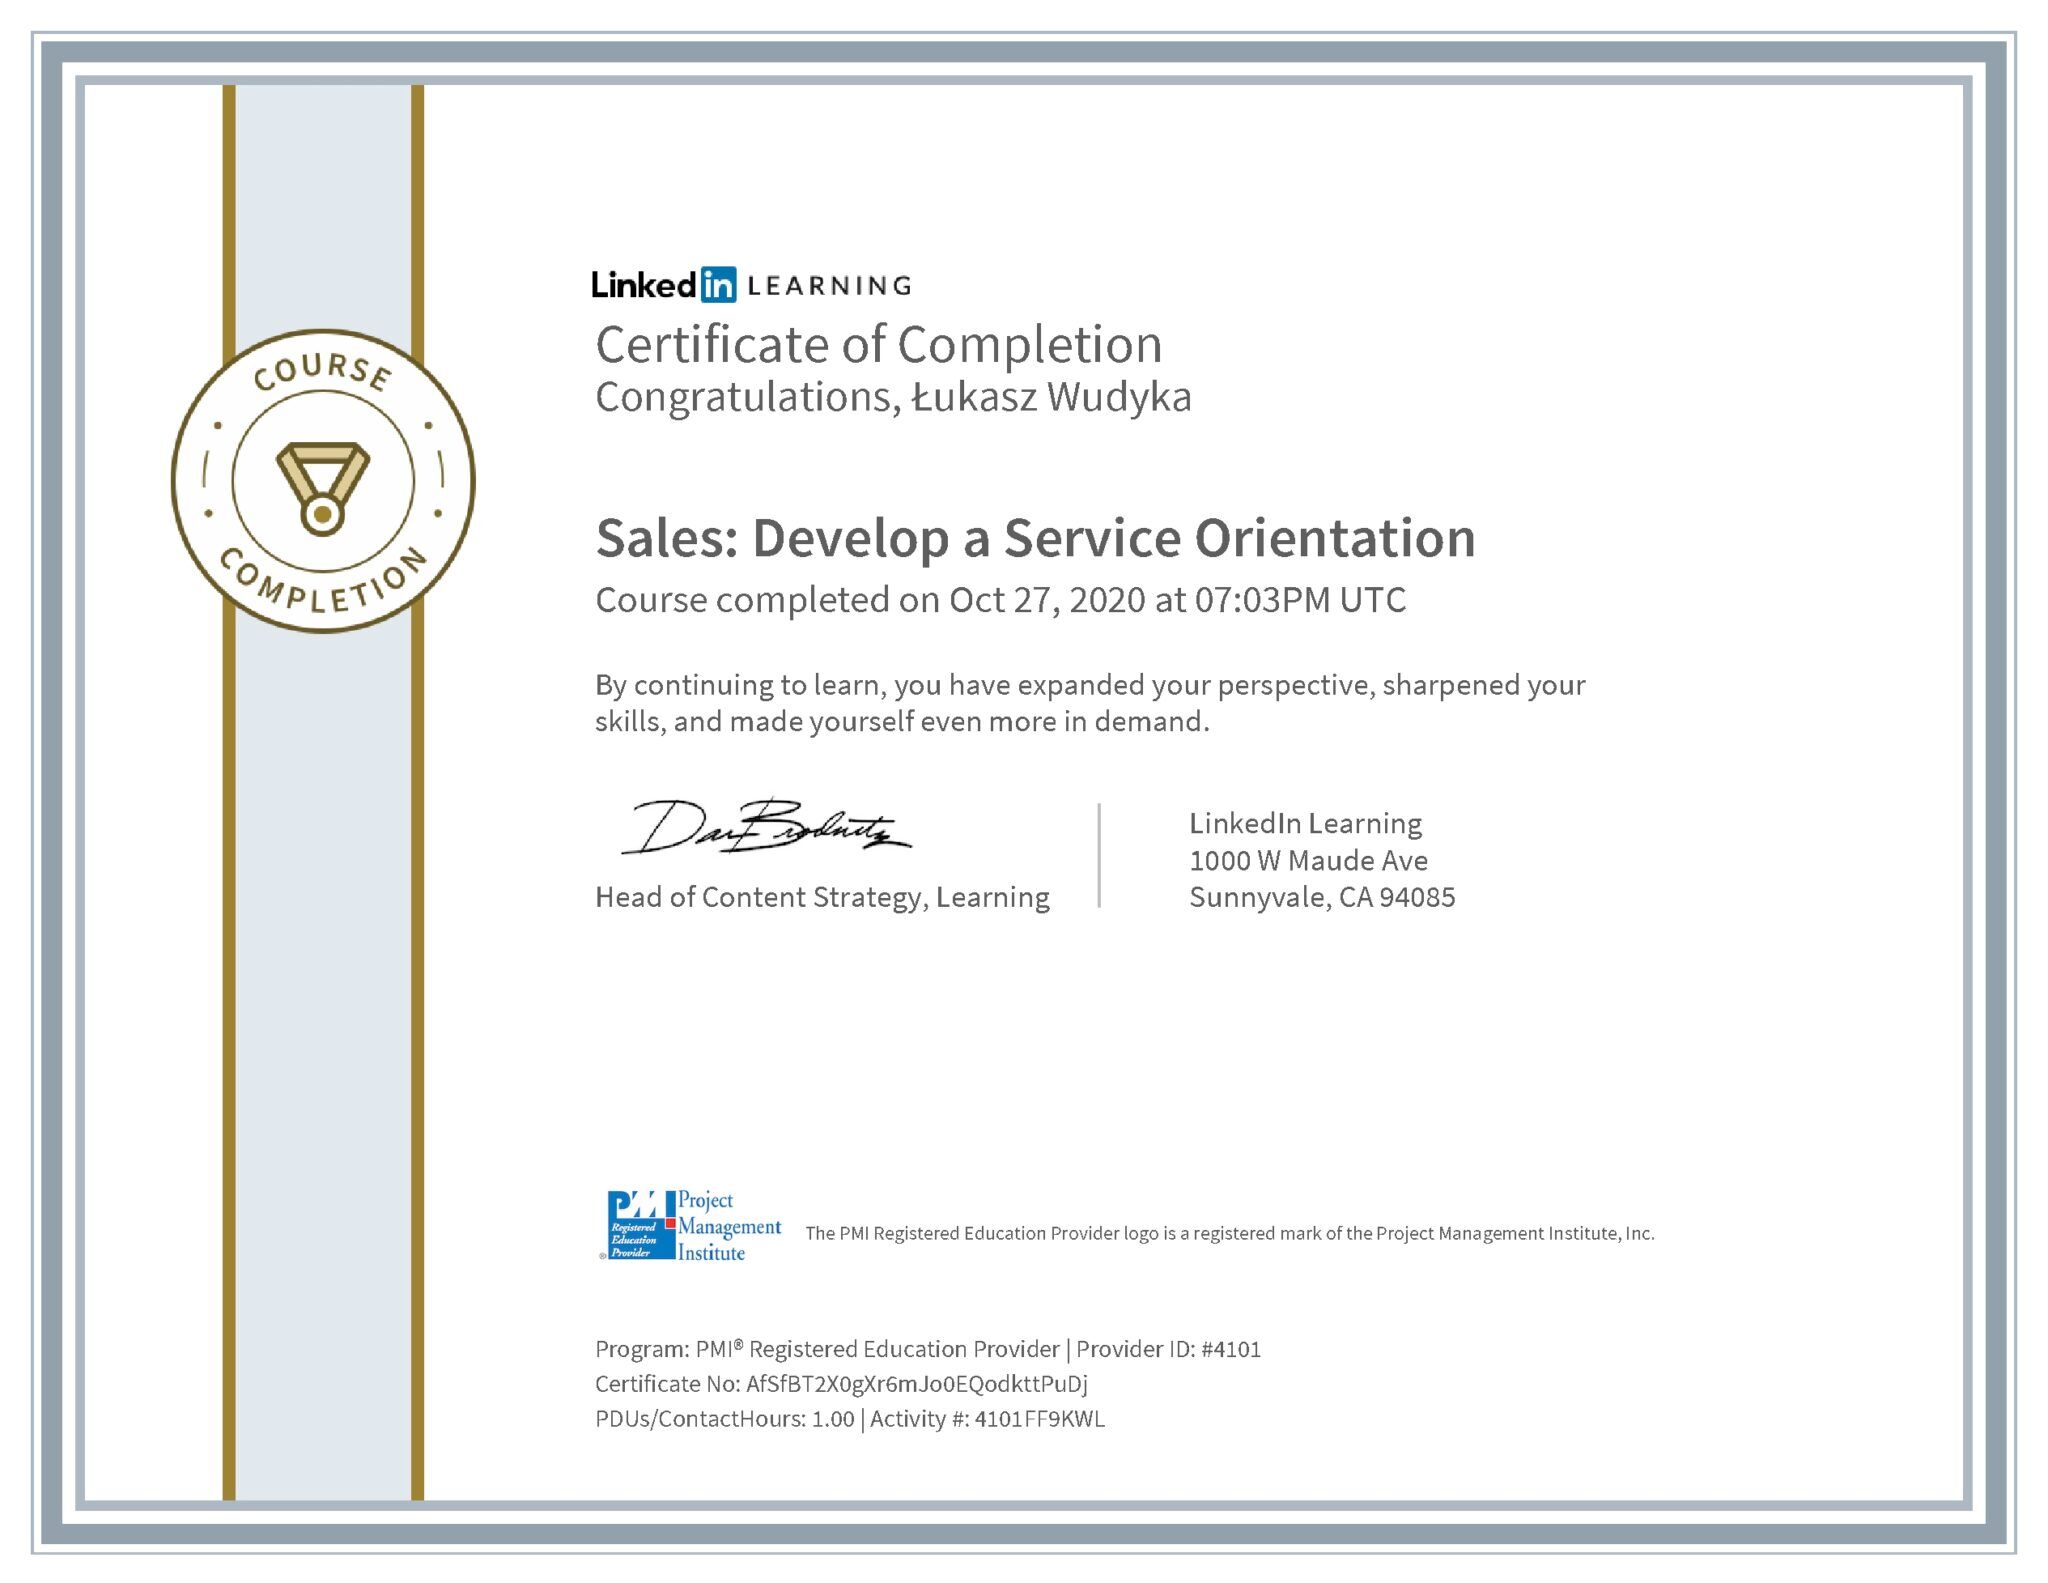 Łukasz Wudyka certyfikat LinkedIn Sales: Develop a Service Orientation PMI